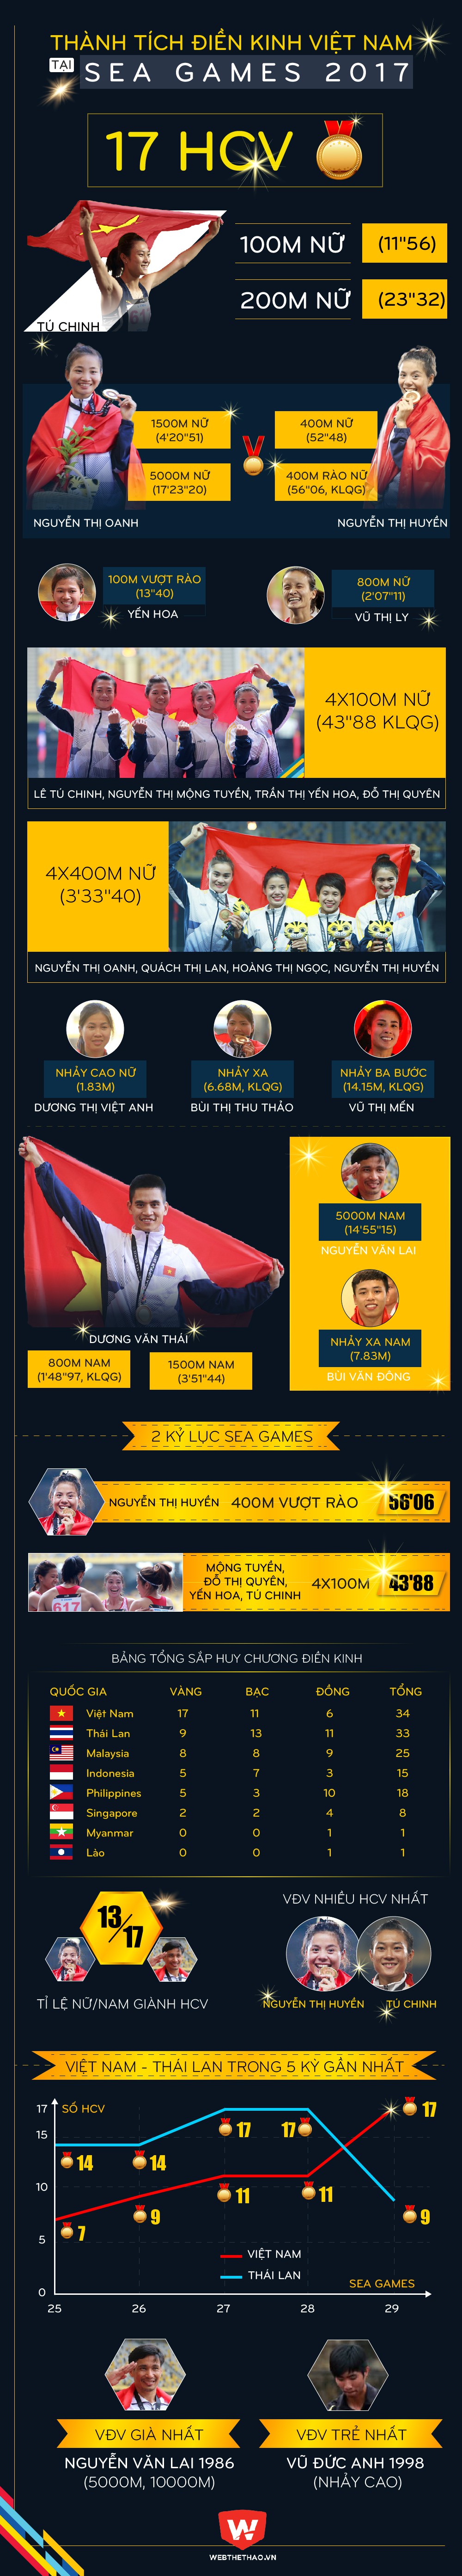 SEA Games 2019: Mỏ vàng điền kinh Việt Nam bị chủ nhà Philippines hạn chế tàn bạo - Ảnh 1.